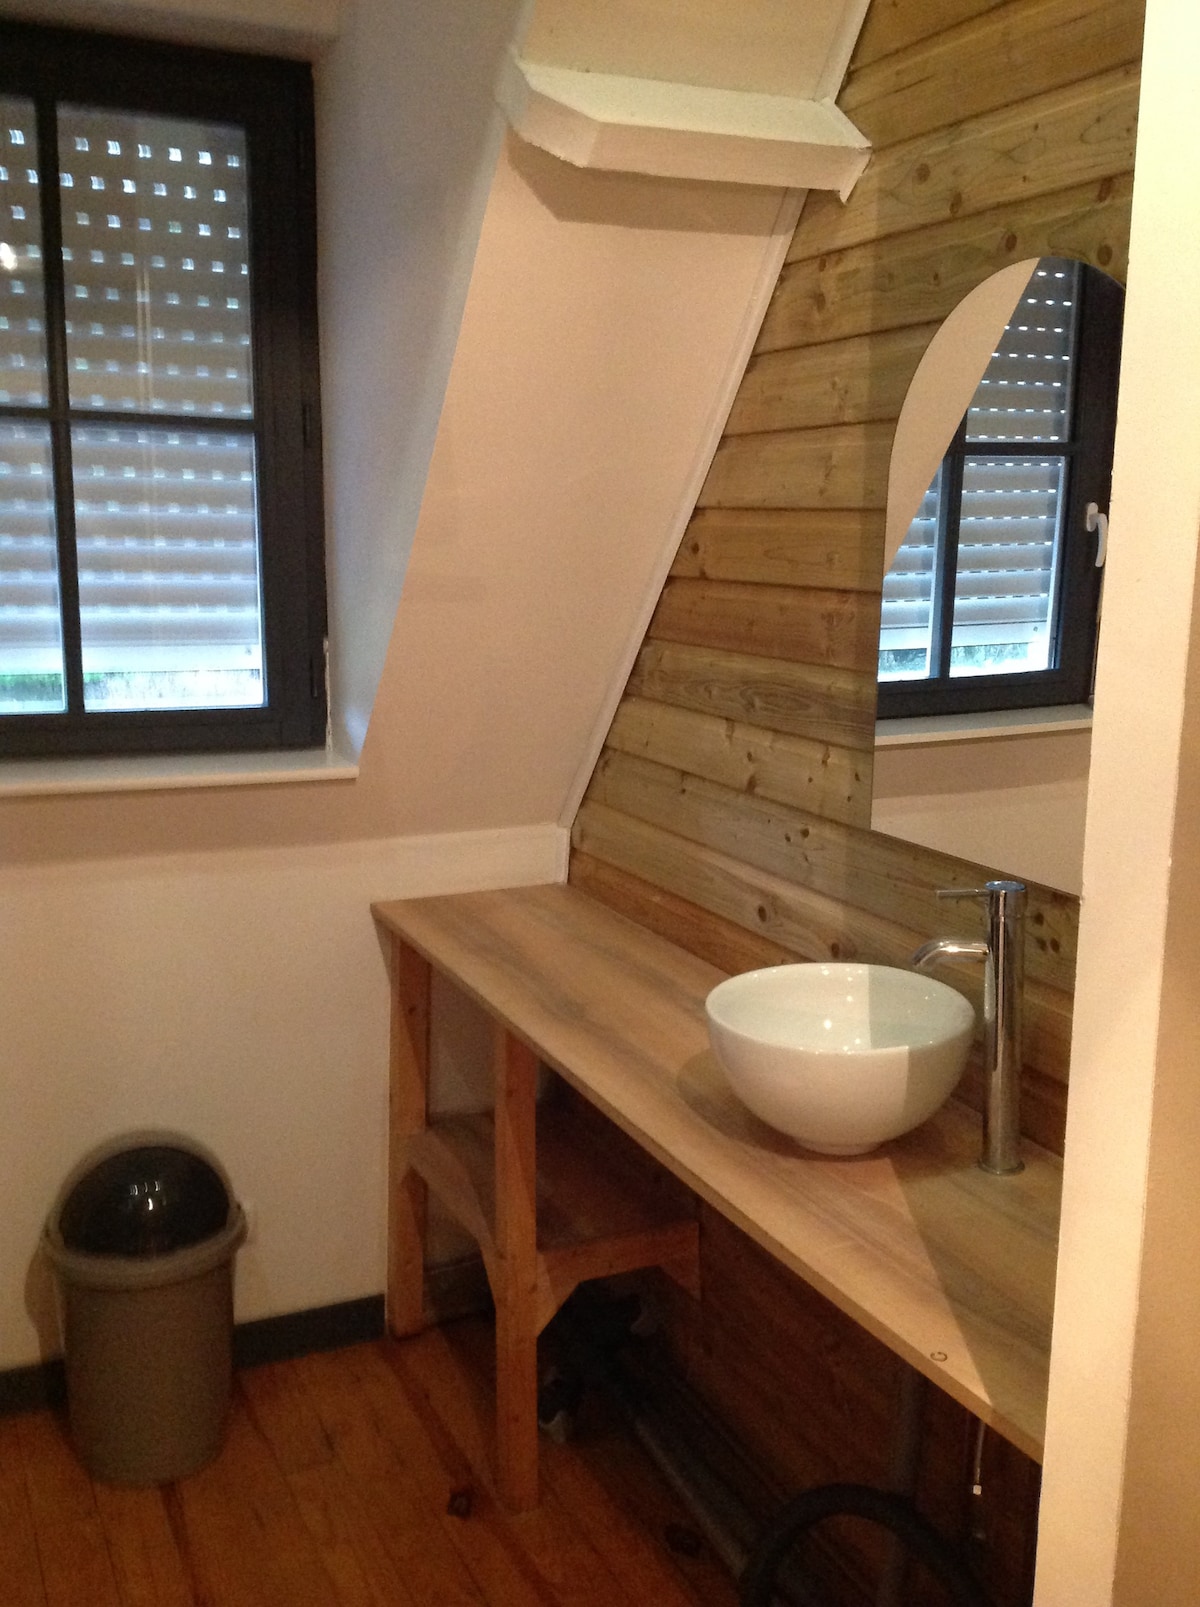 Studio indépendant avec salle d'eau,wc  cuisinette